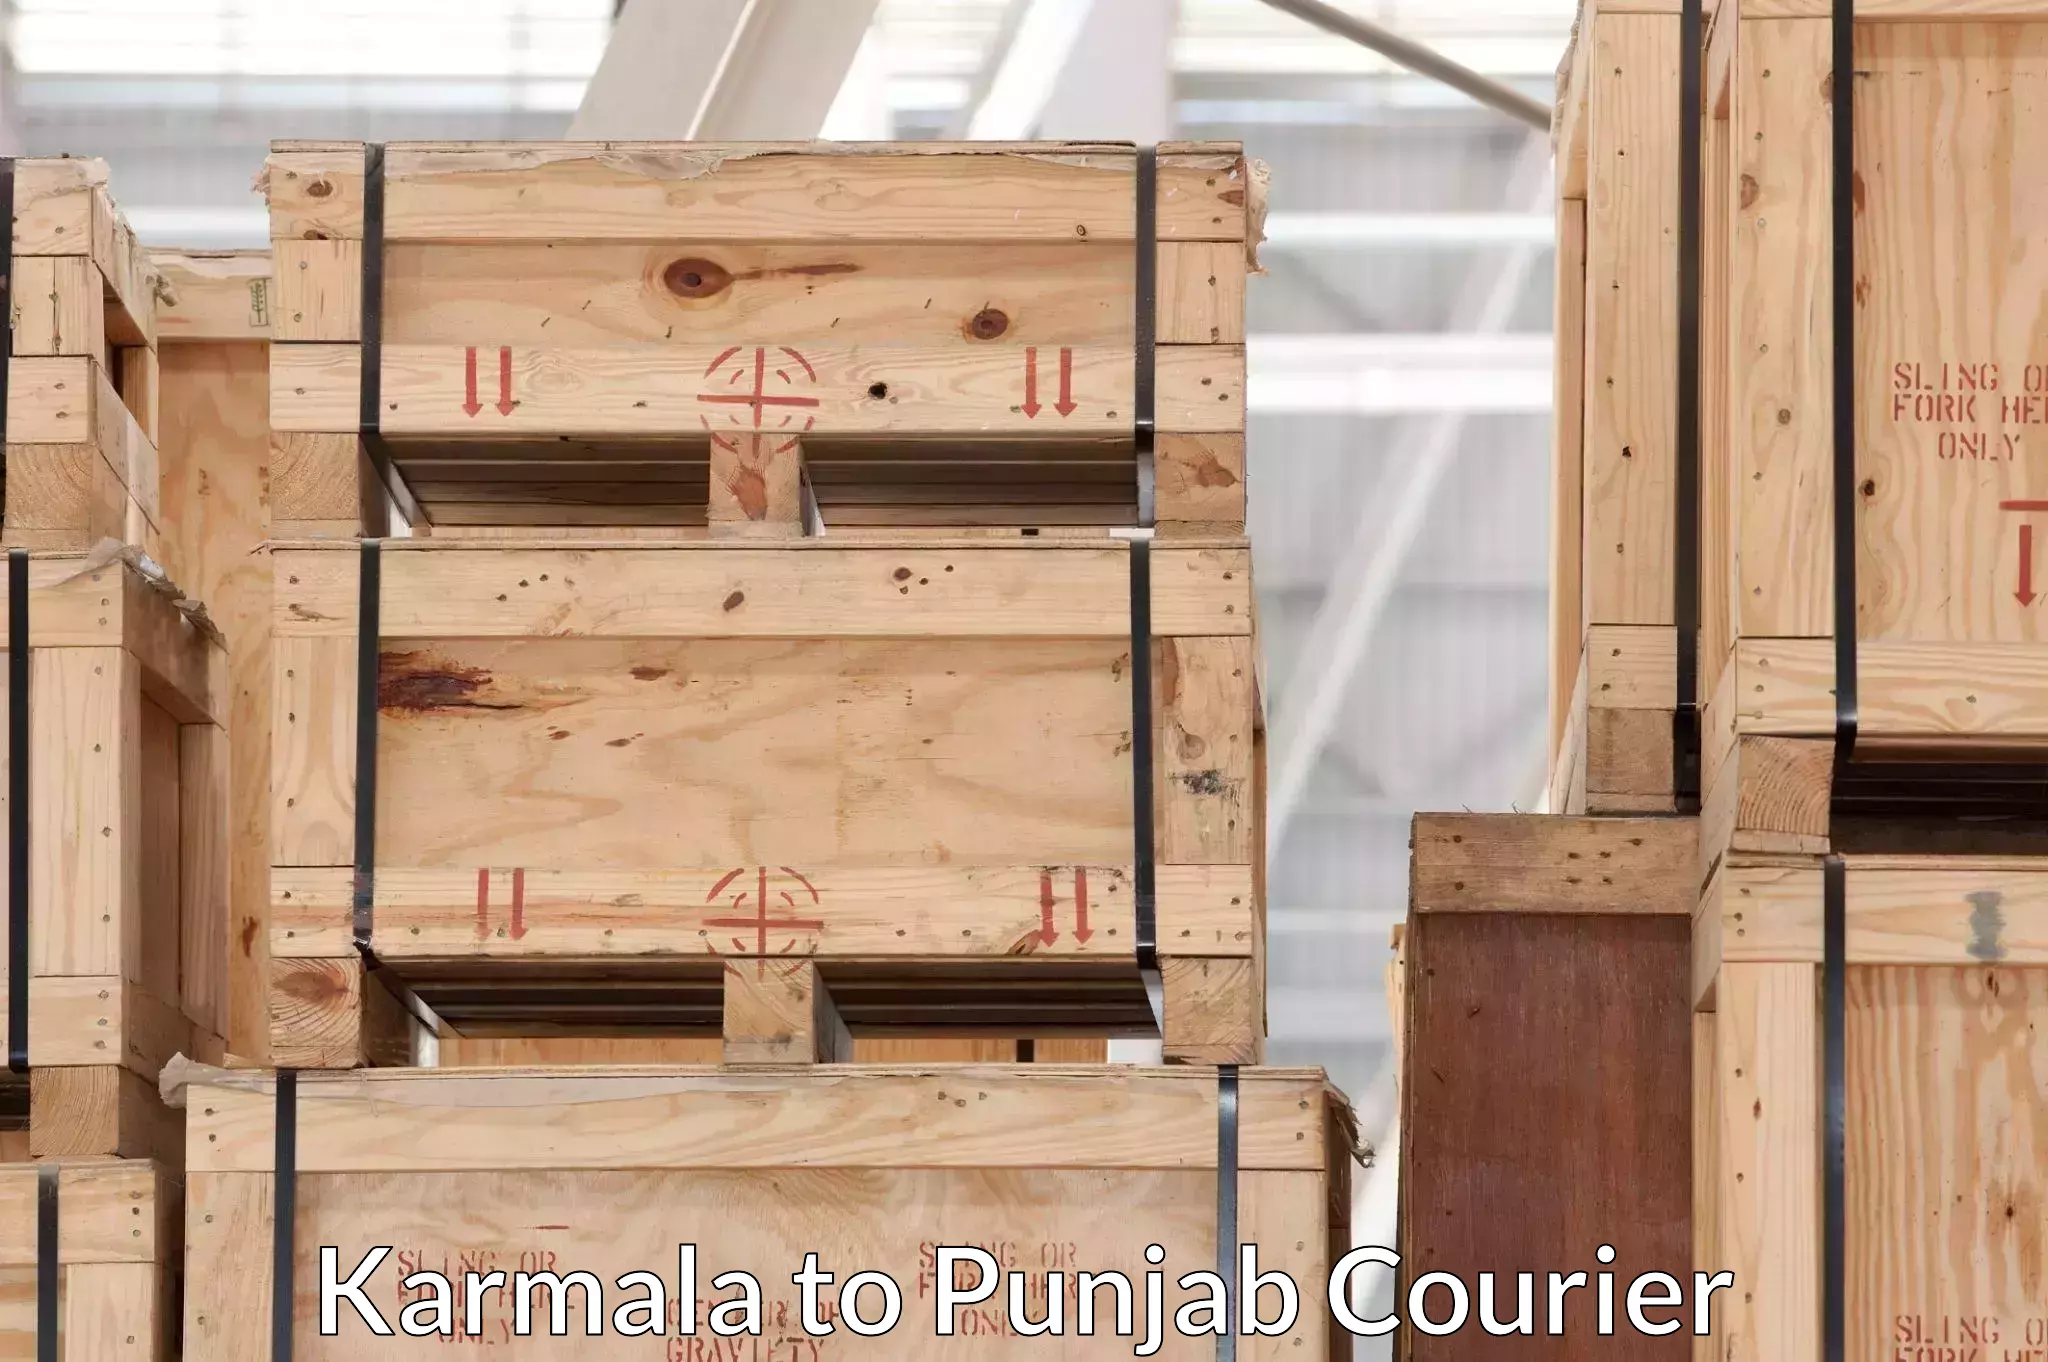 Efficient moving company Karmala to Rajpura